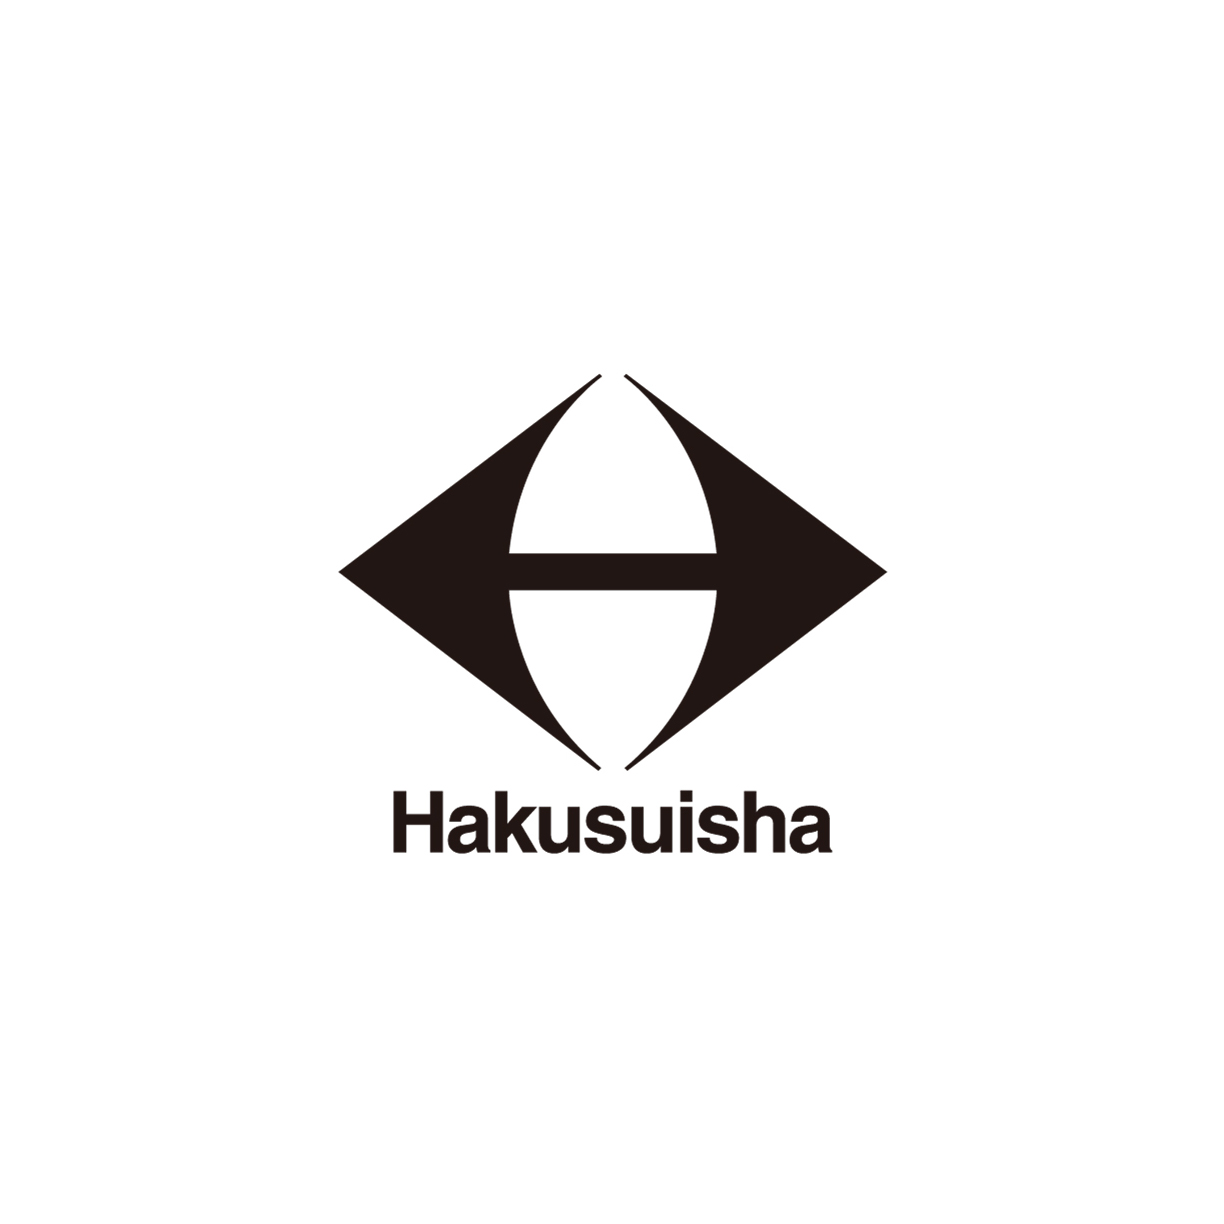 Hakusuisha,Inc.